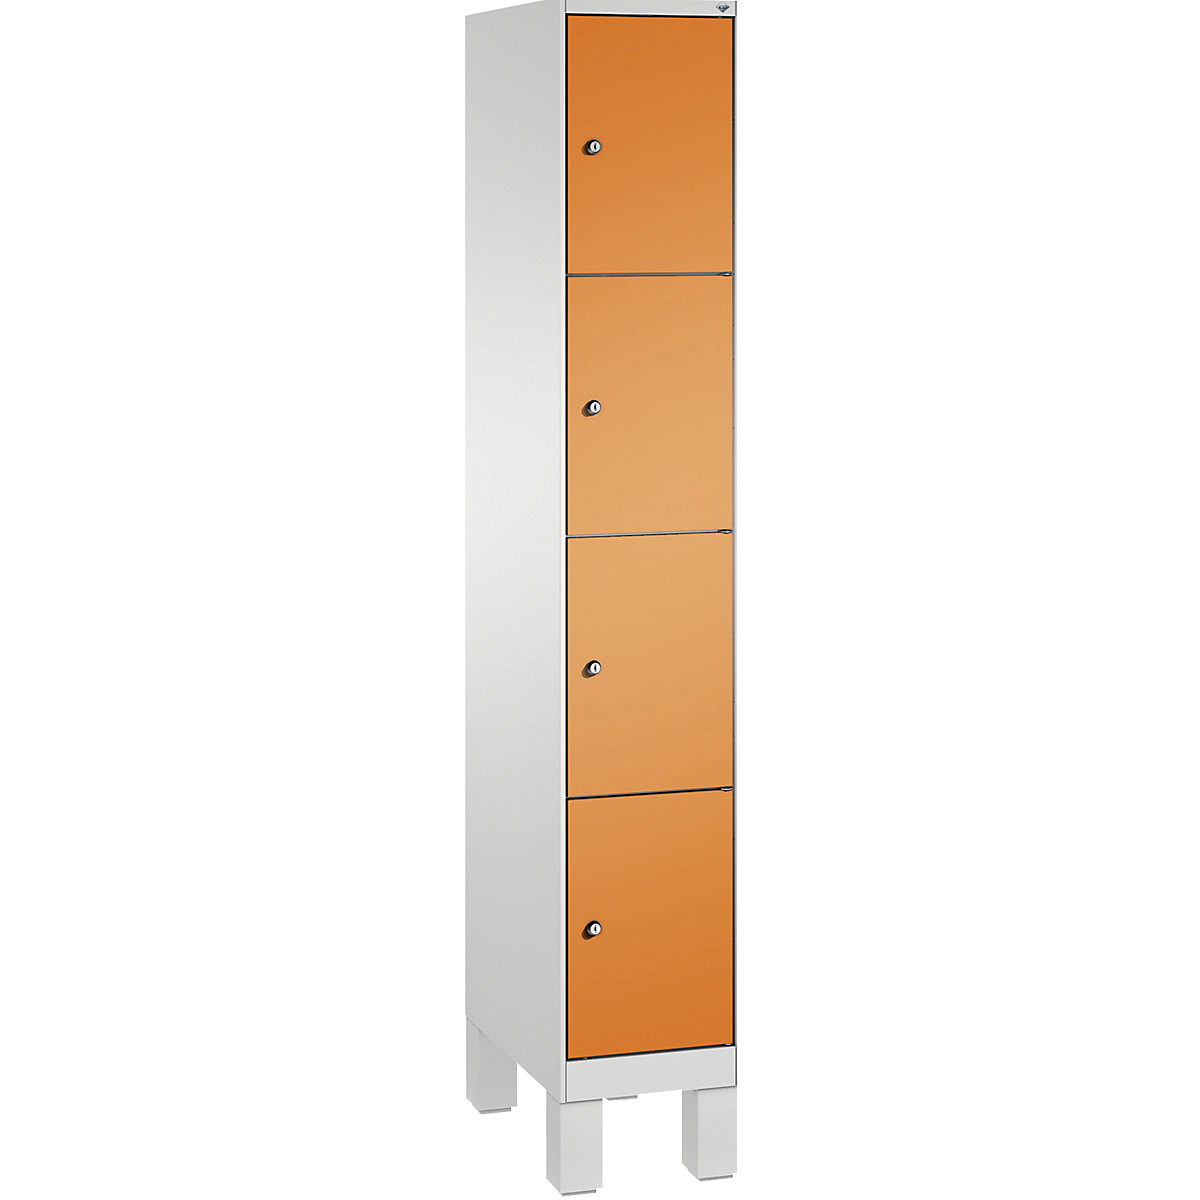 EVOLO locker unit, with feet – C+P, 1 compartment, 4 shelf compartments, compartment width 300 mm, light grey / yellow orange